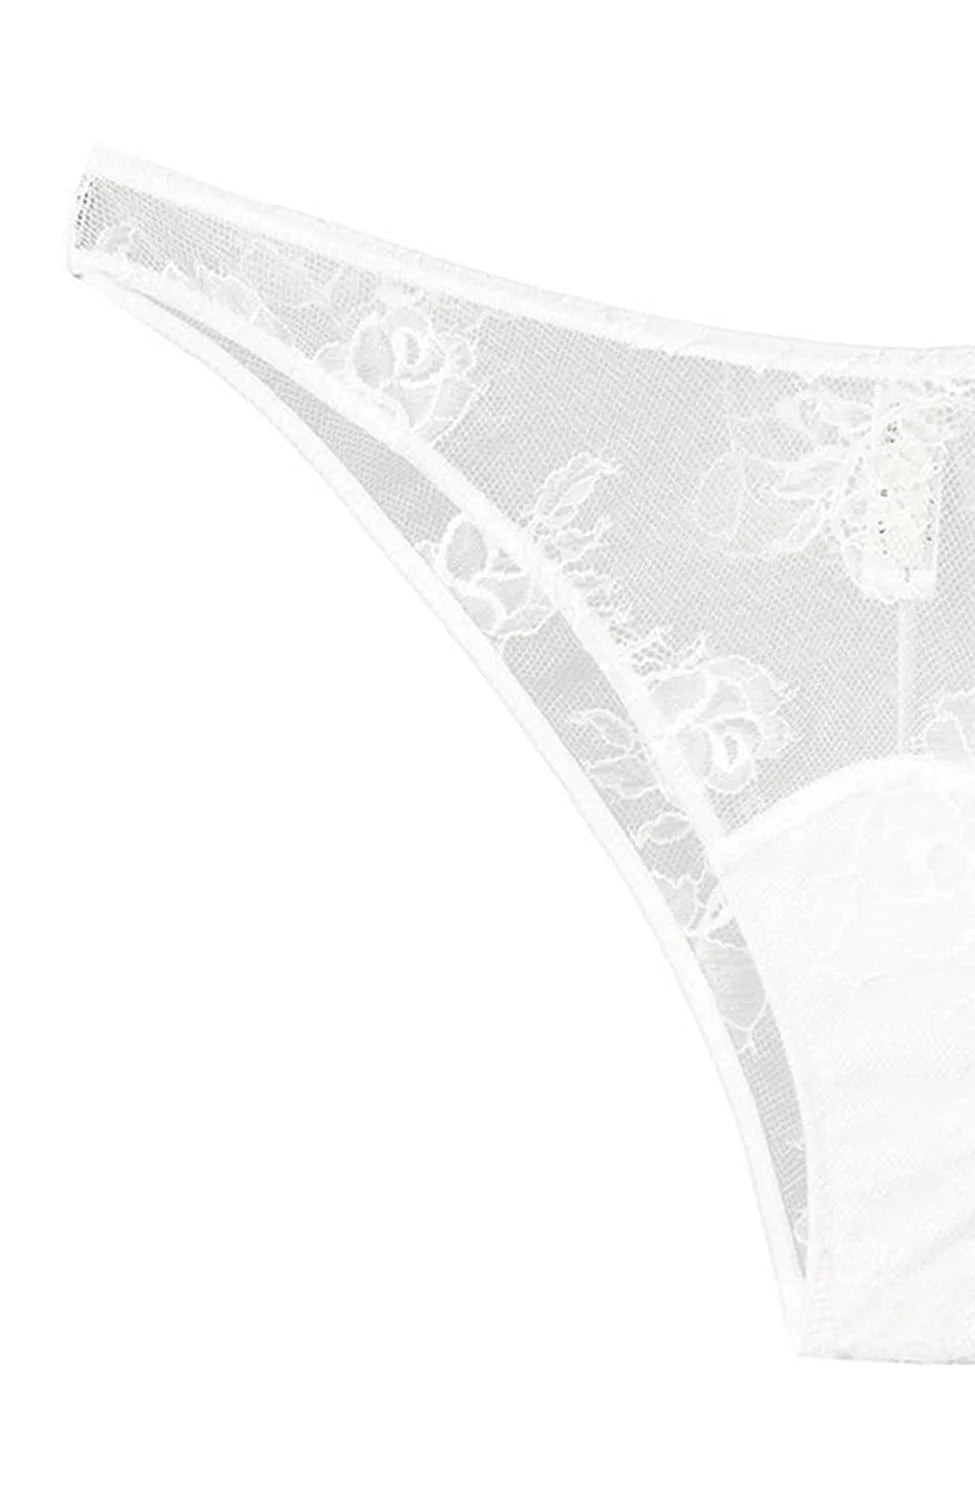 %shop_name_% Fleur du Mal_Bouquet Lace Cheeky _ Underwear_